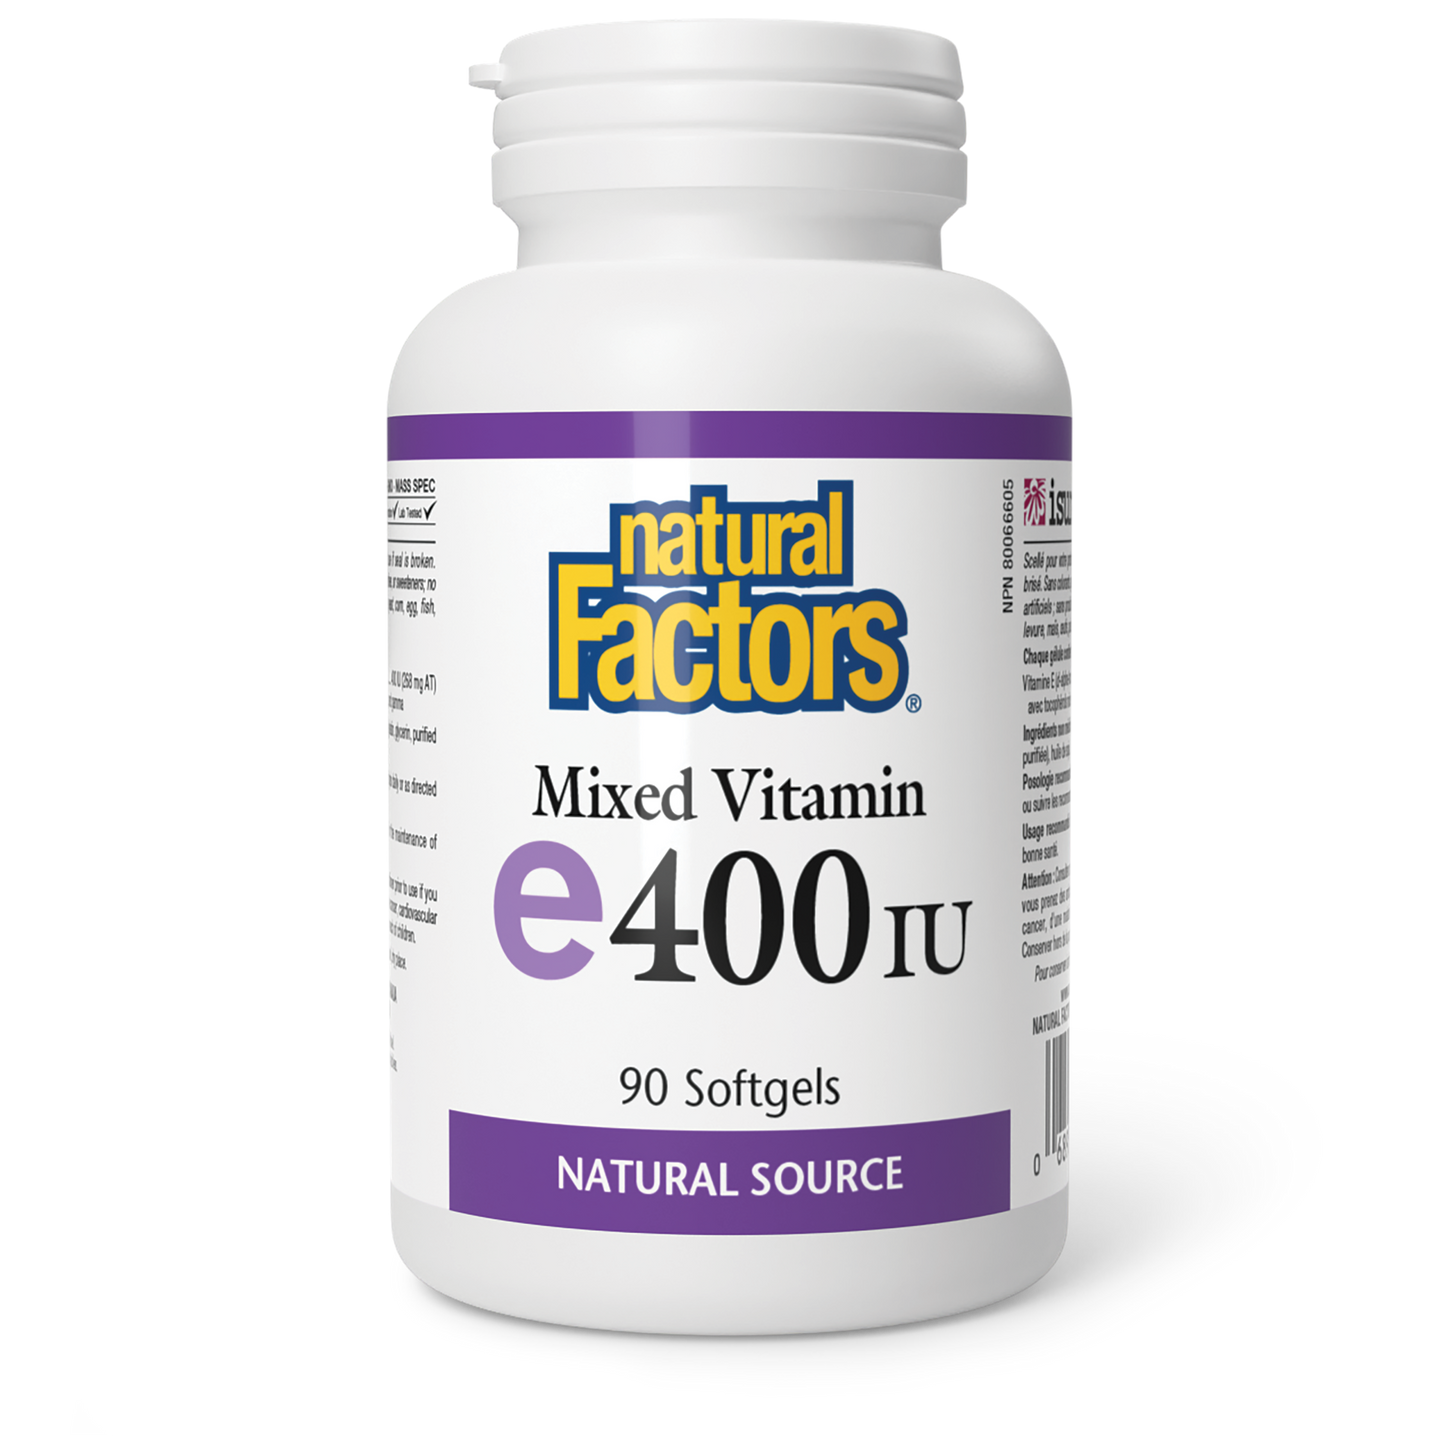 Mixed Vitamin e400IU 90 softgels